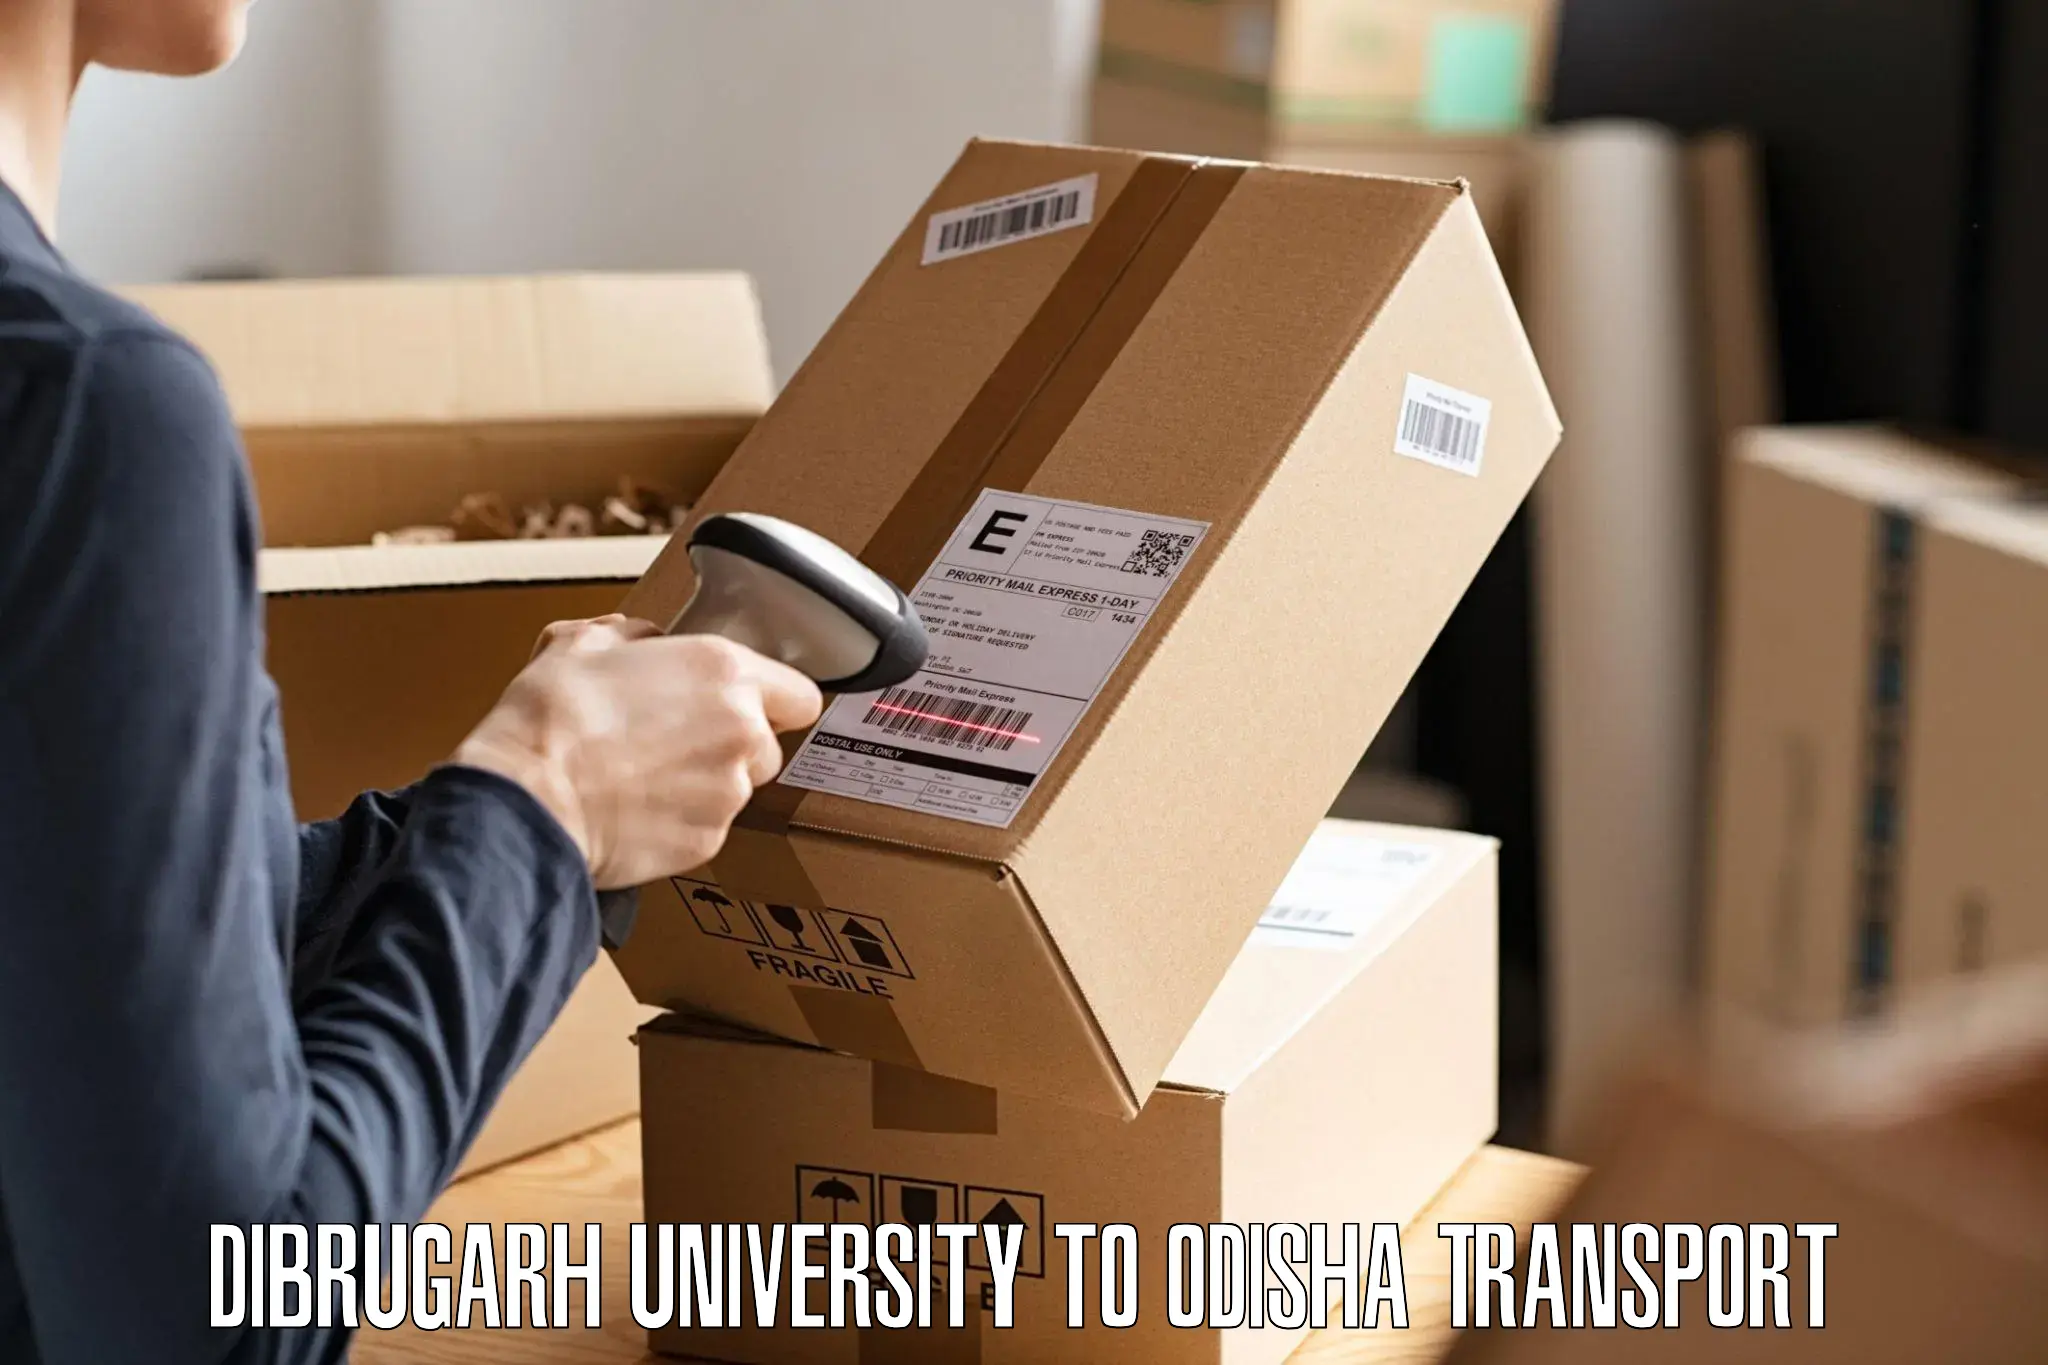 Two wheeler transport services Dibrugarh University to Baleswar